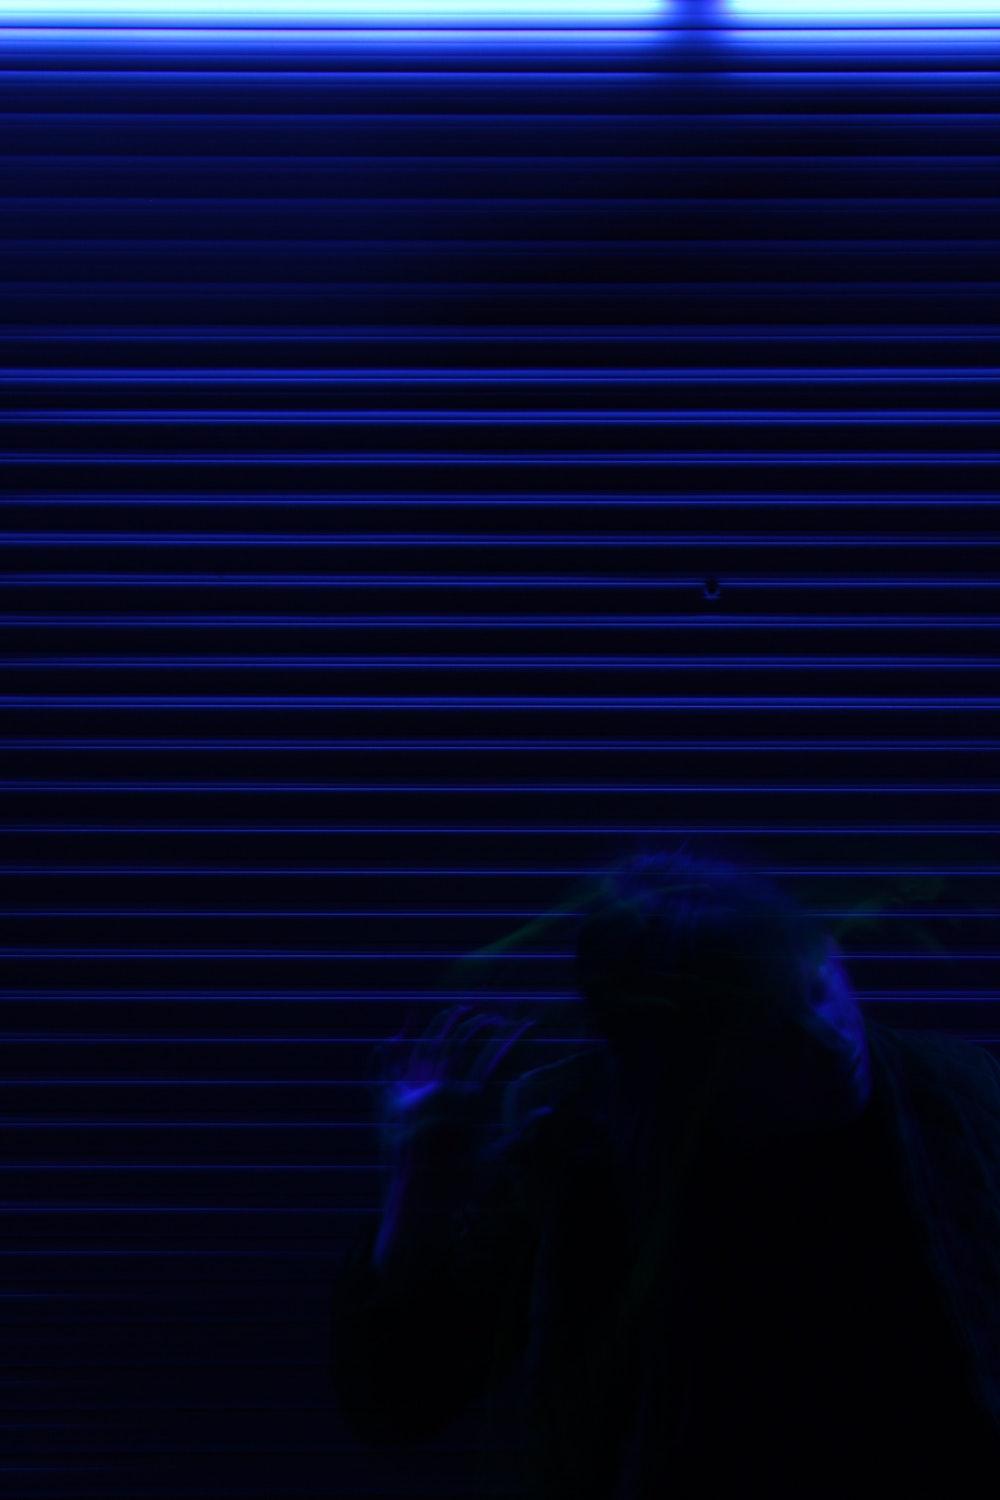 Dark Blue Aesthetic Background Wallpaper